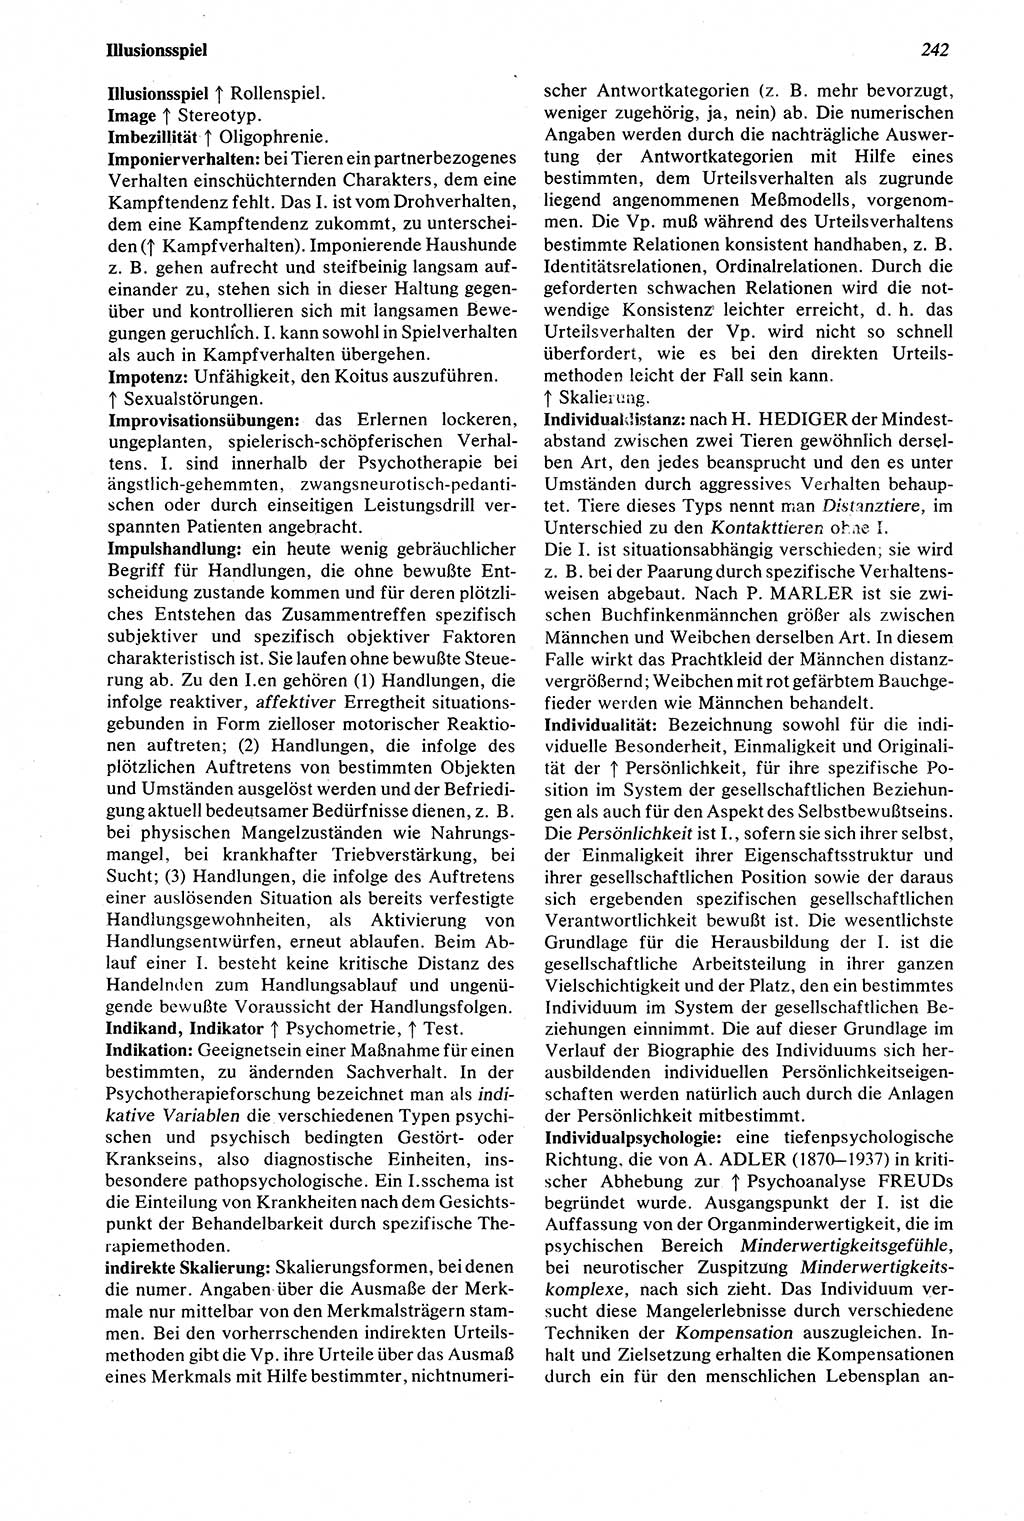 Wörterbuch der Psychologie [Deutsche Demokratische Republik (DDR)] 1976, Seite 242 (Wb. Psych. DDR 1976, S. 242)